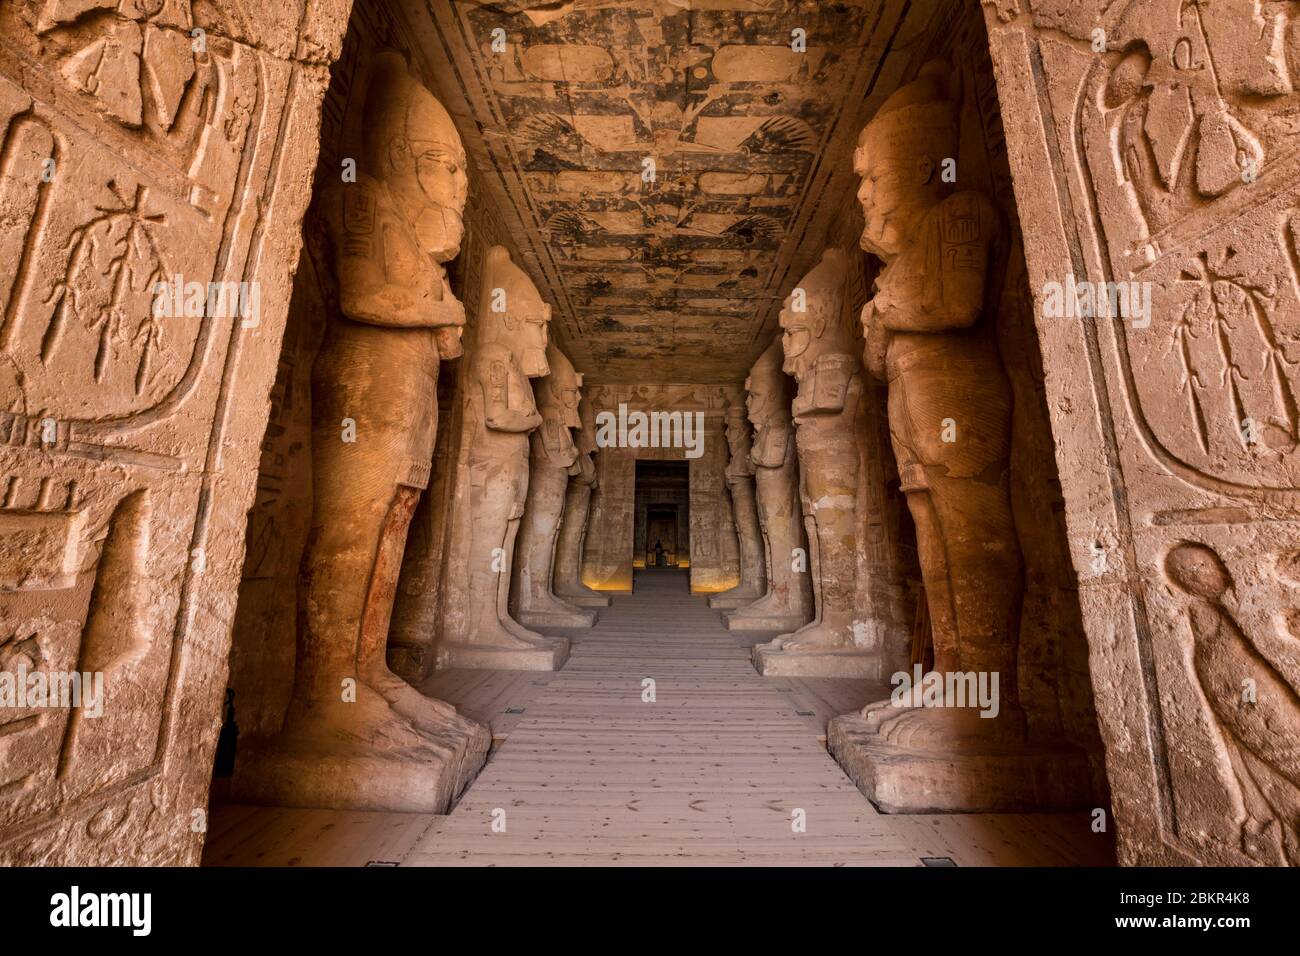 Egitto, Alto Egitto, Nubia, Abu Simbel, Patrimonio dell'Umanità dell'UNESCO, tempio di Ramses II, pilastri osirici che portano l'immagine di Ramses II che sostiene il pronao (sala ipostile) Foto Stock